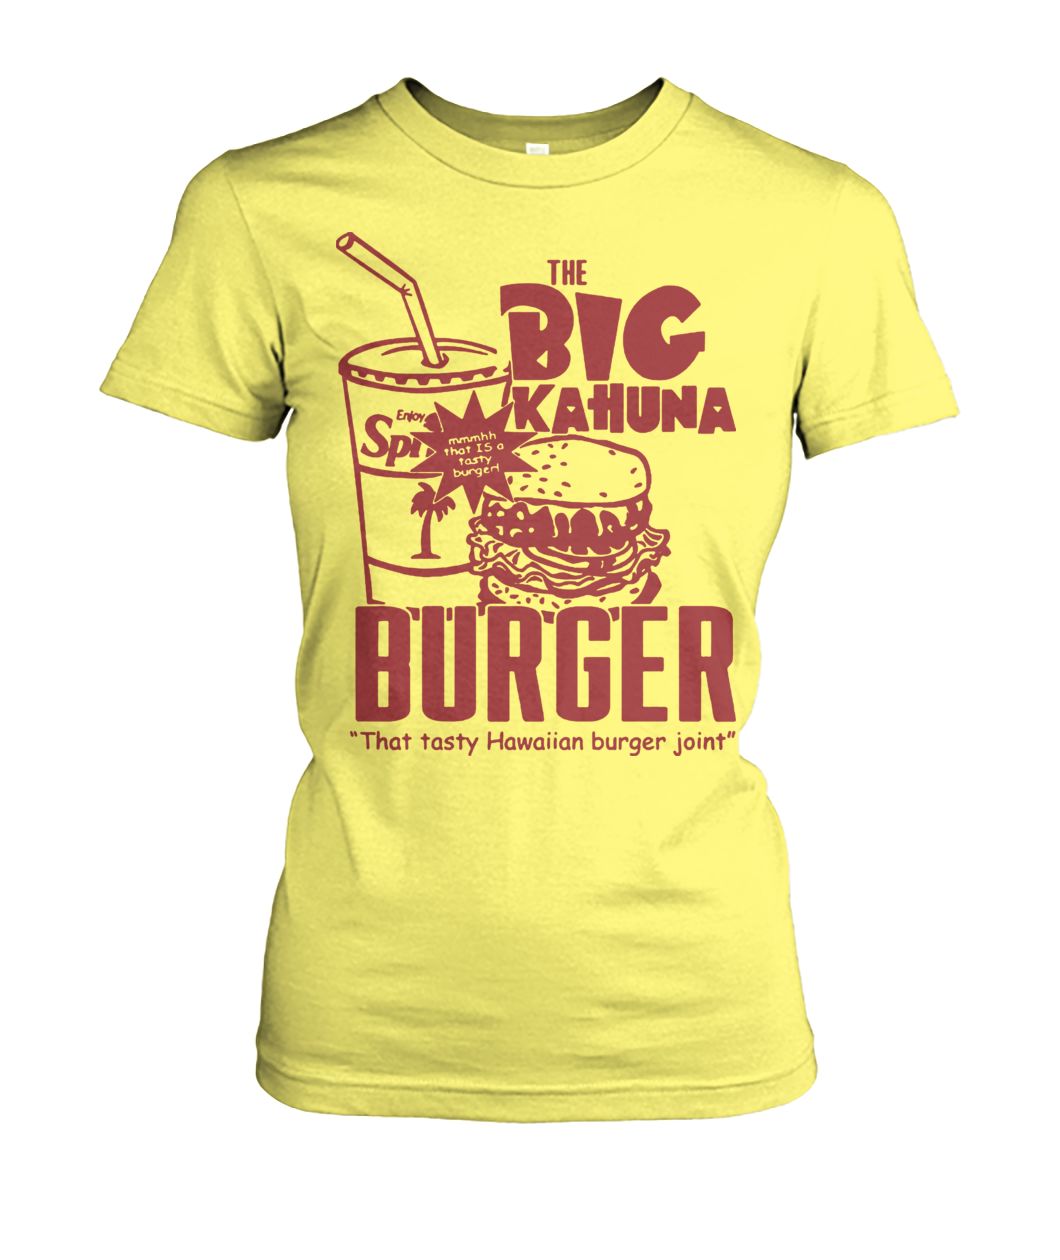 The big kahuna burger pulp fiction women's crew tee